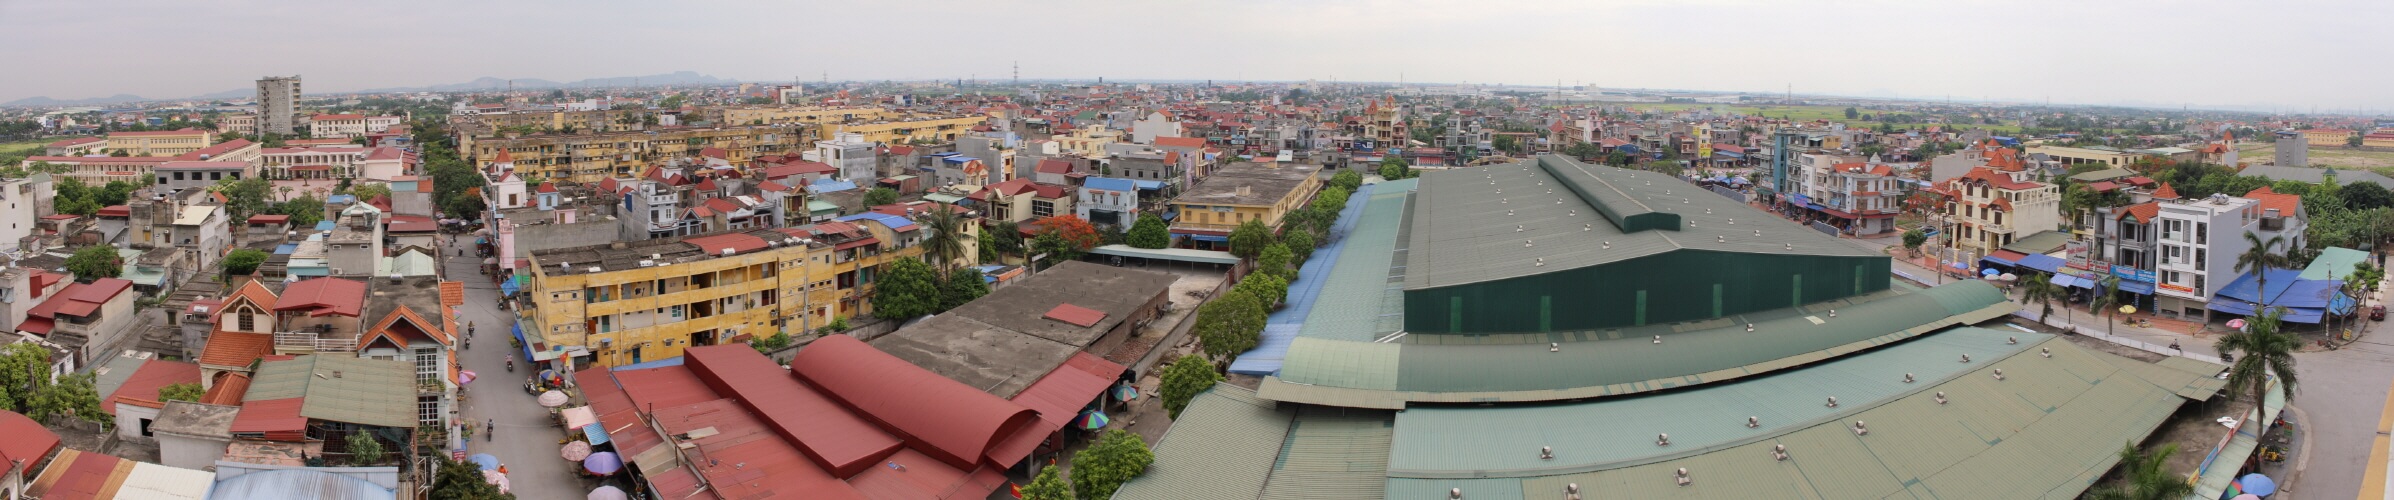 베트남 하이퐁 영게스트하우스 - 4호점 : 베트남 하이퐁 영게스트하우스 - 4호점 : panorama.jpg